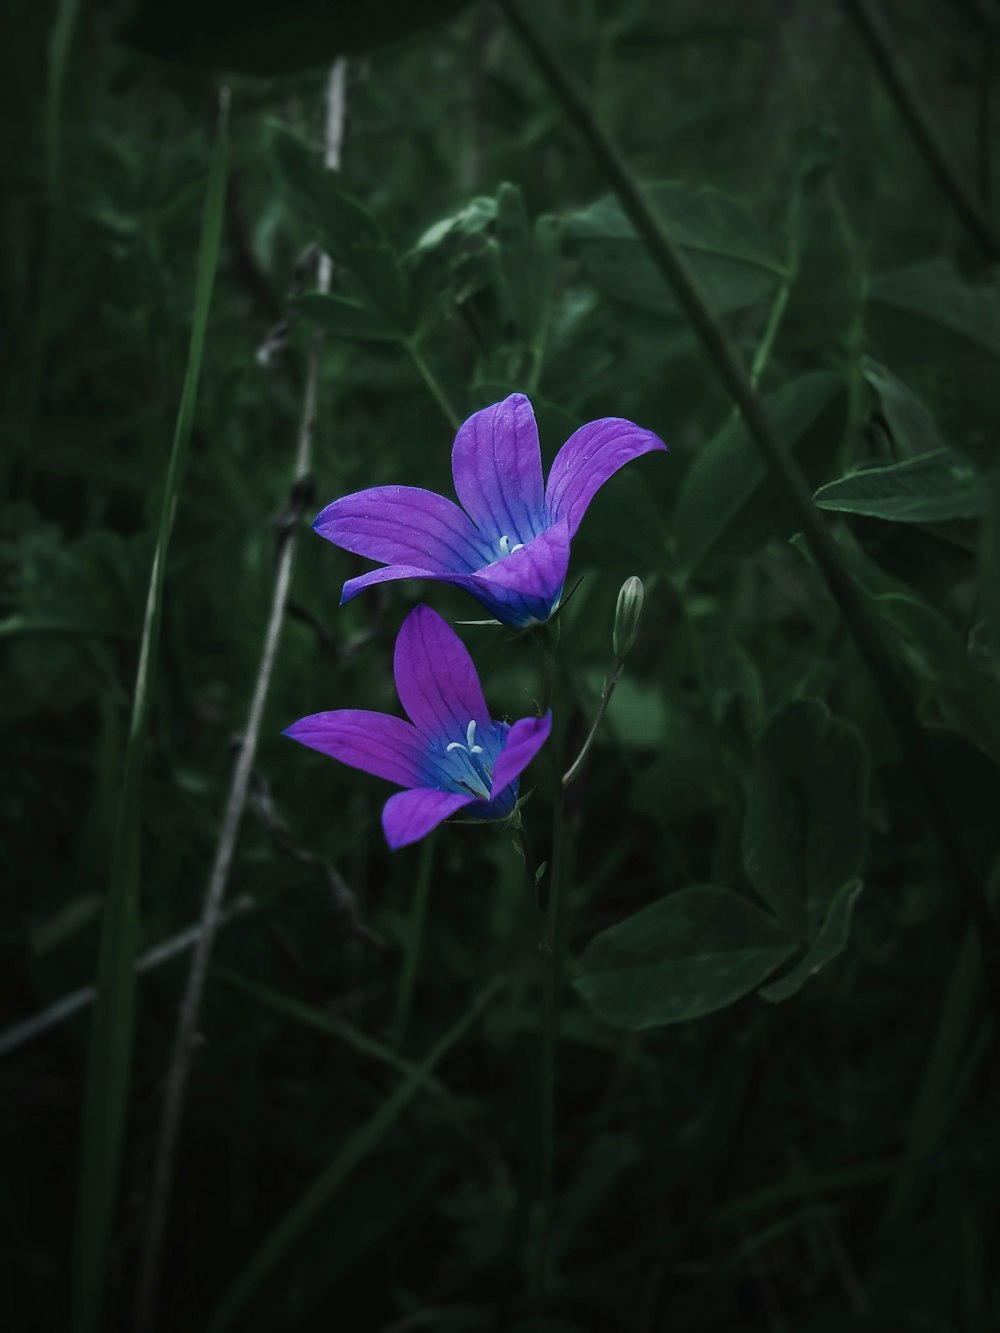 two purple flowers in a field of green grass